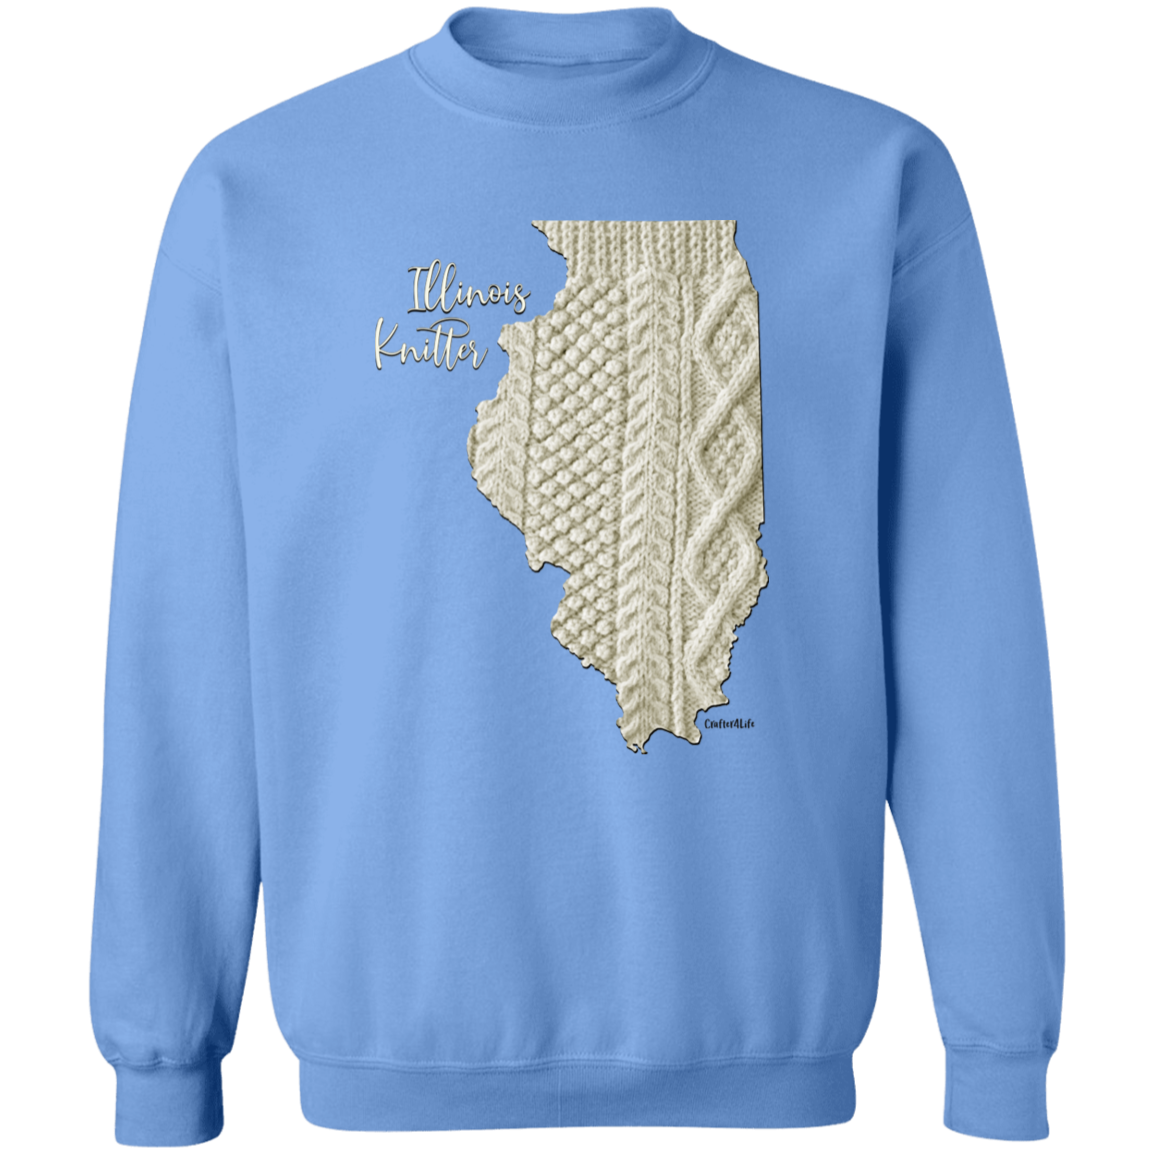 Illinois Knitter Crewneck Pullover Sweatshirt